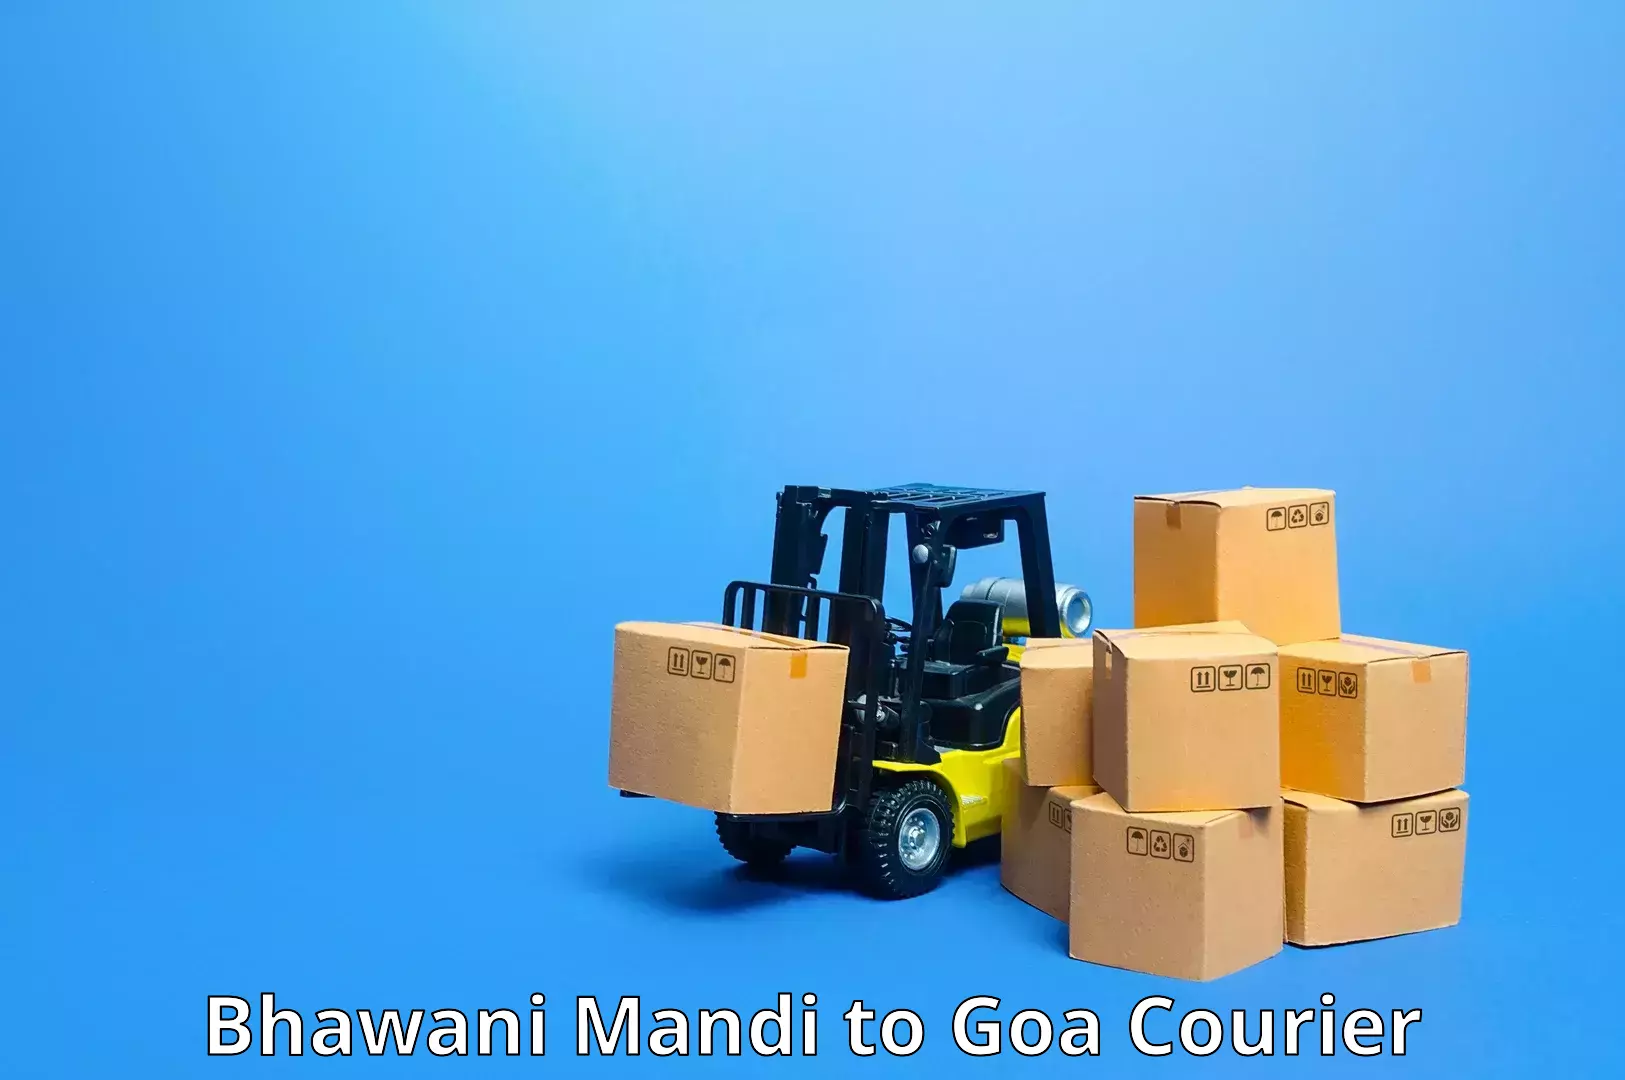 Expedited shipping methods in Bhawani Mandi to IIT Goa